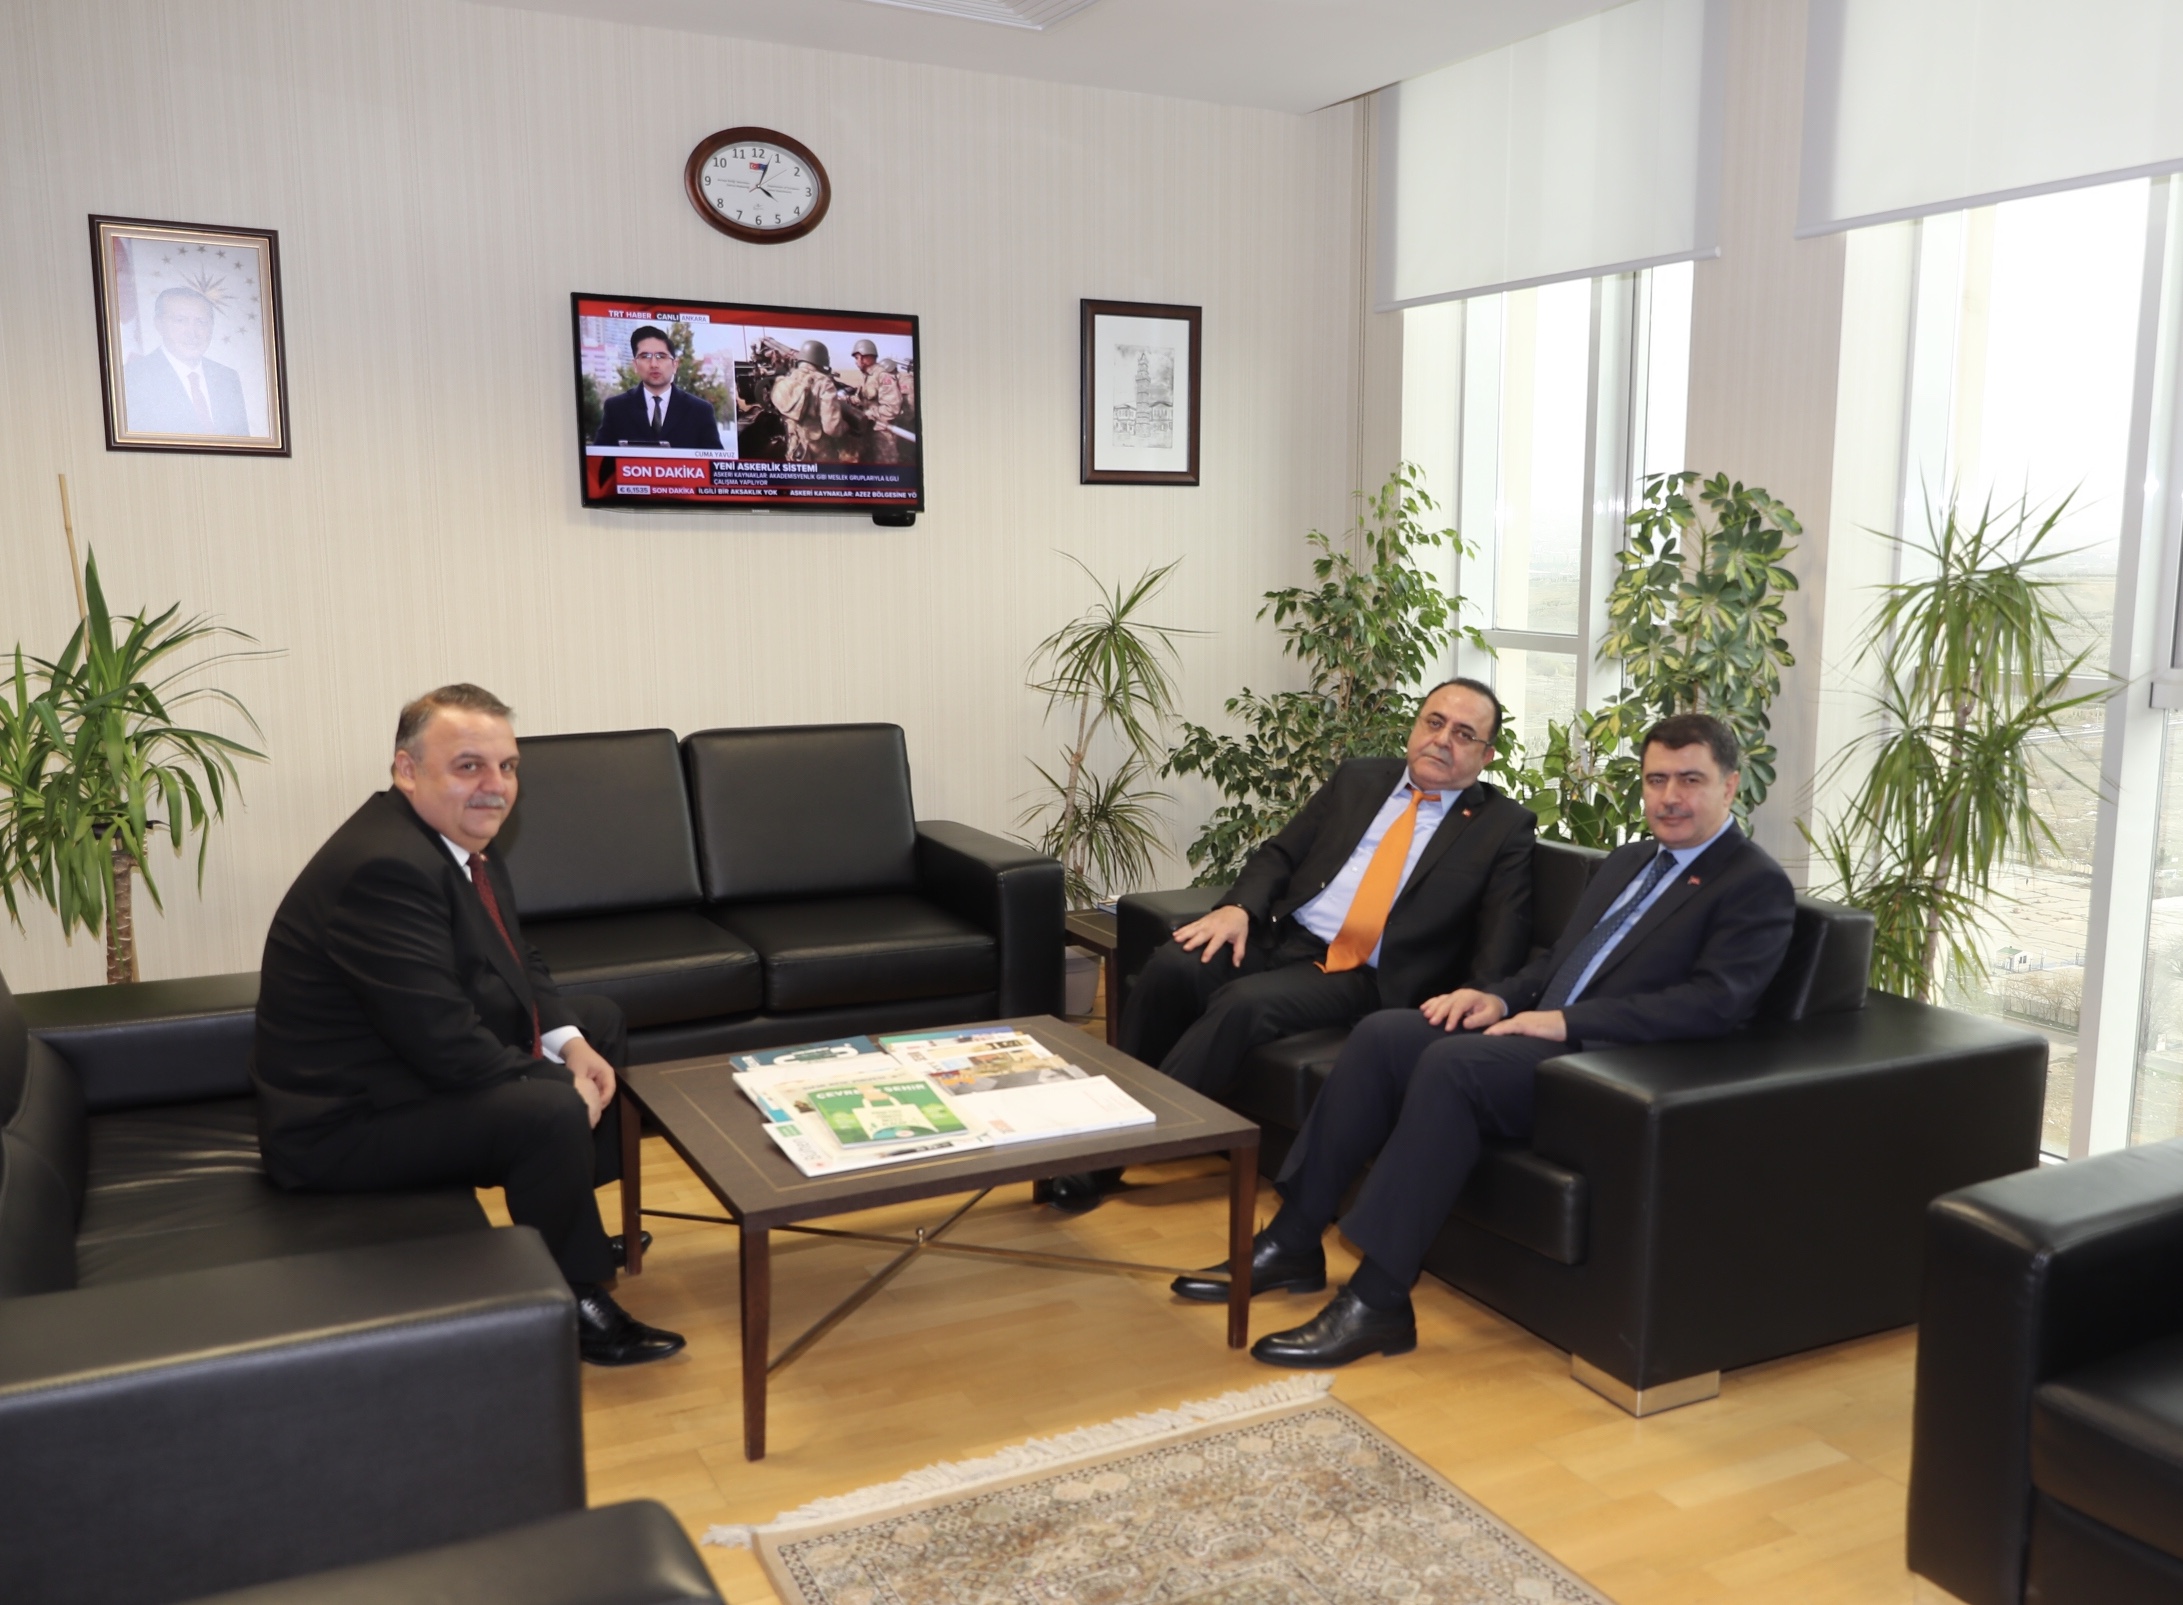 Sayın Ankara Valisi Vasip ŞAHİN, Sayın Başkanımız İhsan YİĞİT’e Çalışma Ziyaretinde Bulunmuştur.